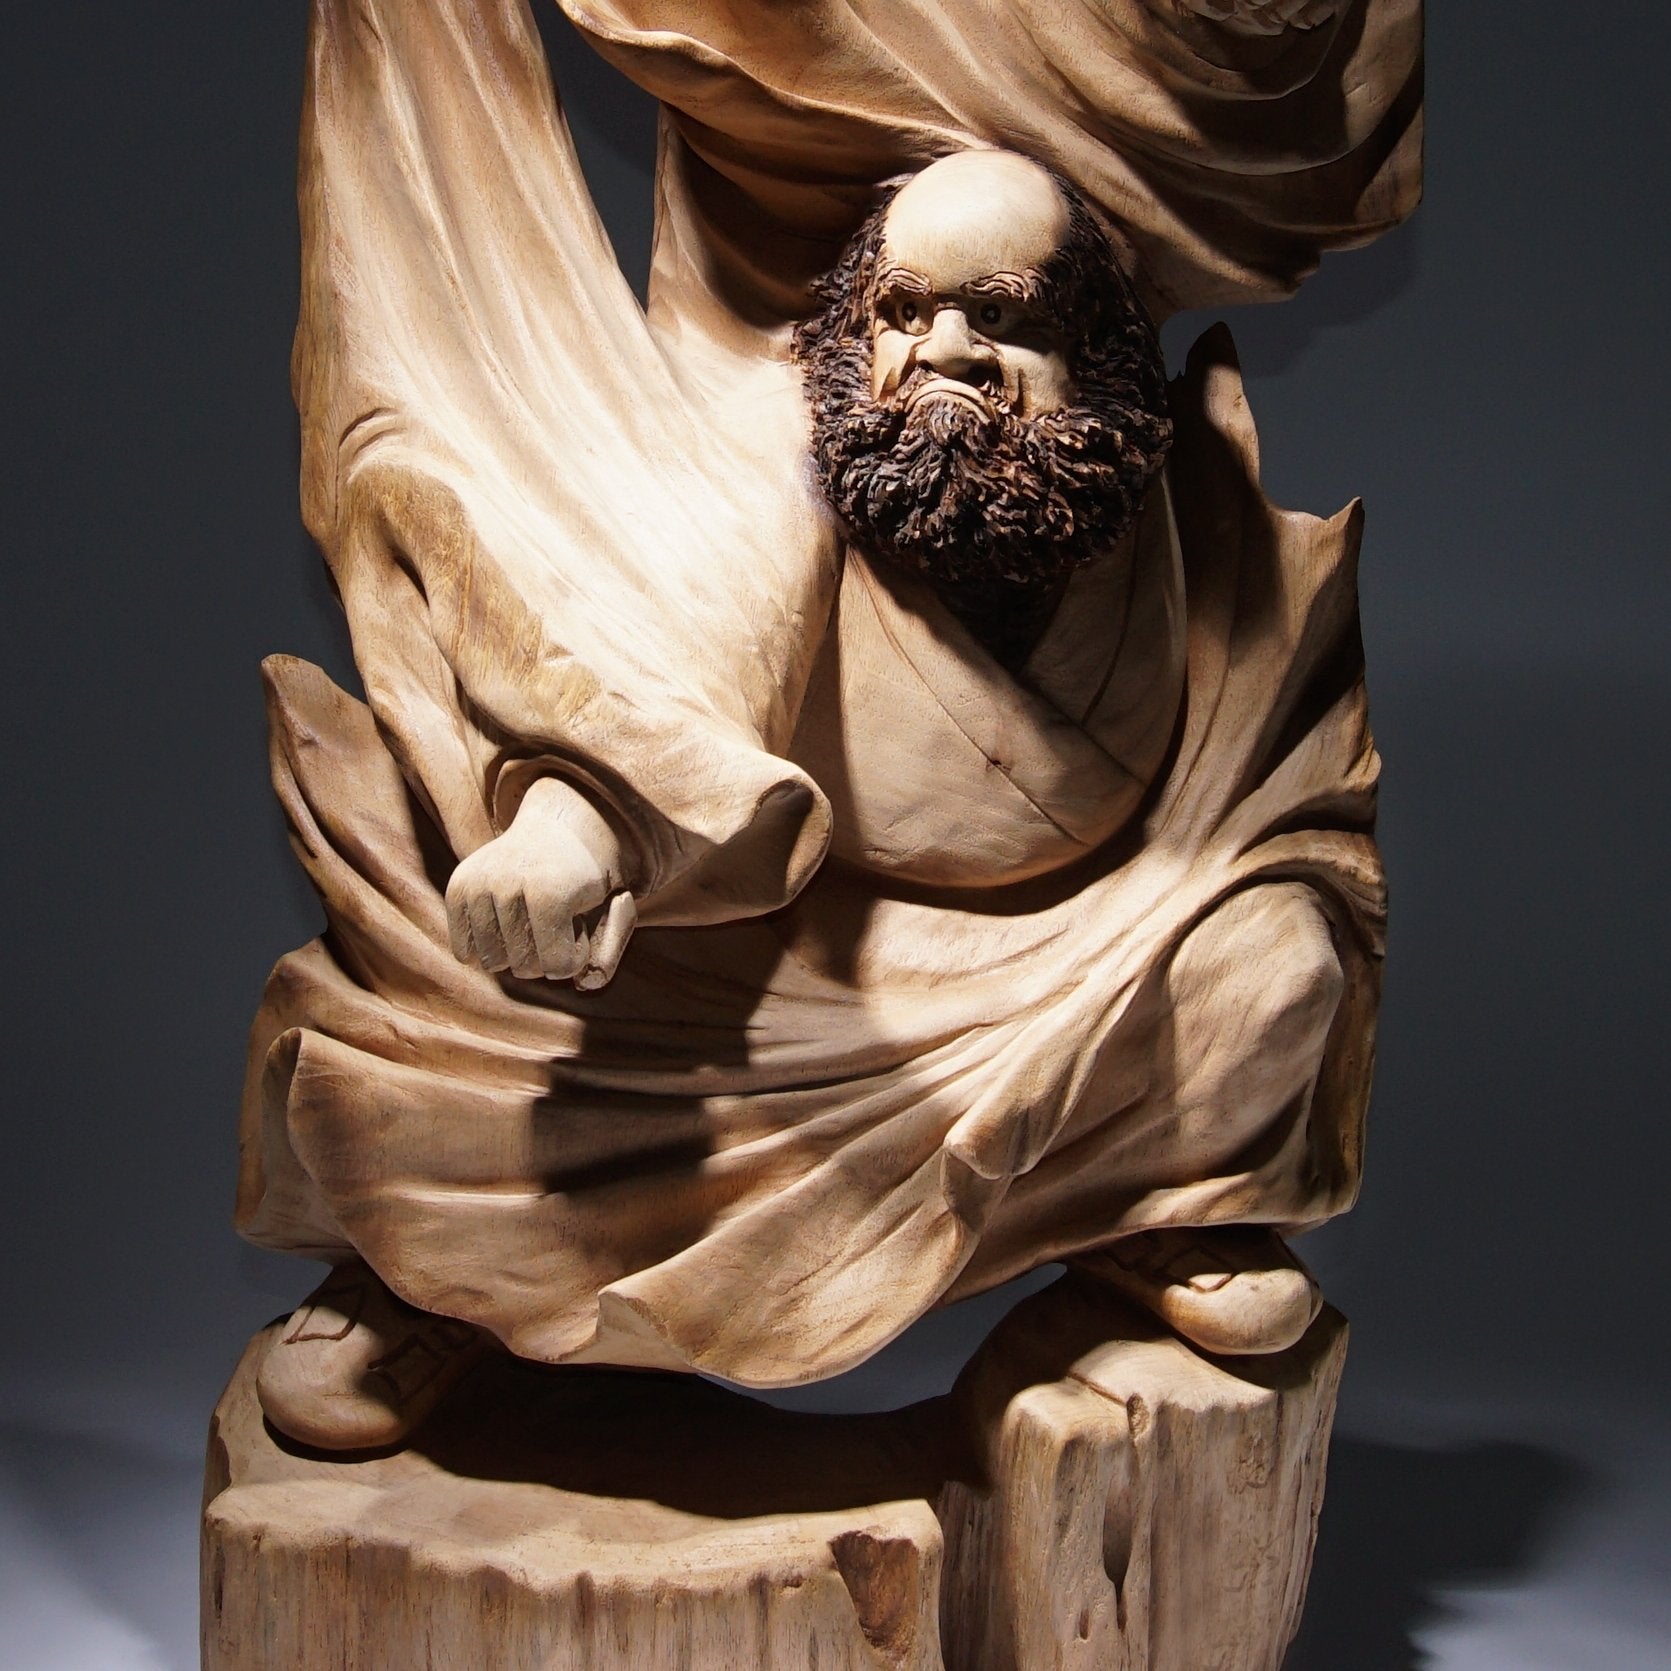 武達摩不倒翁-工藝之家木雕[訂製] – LEADER 益德| 鶯歌陶瓷人文茶器 